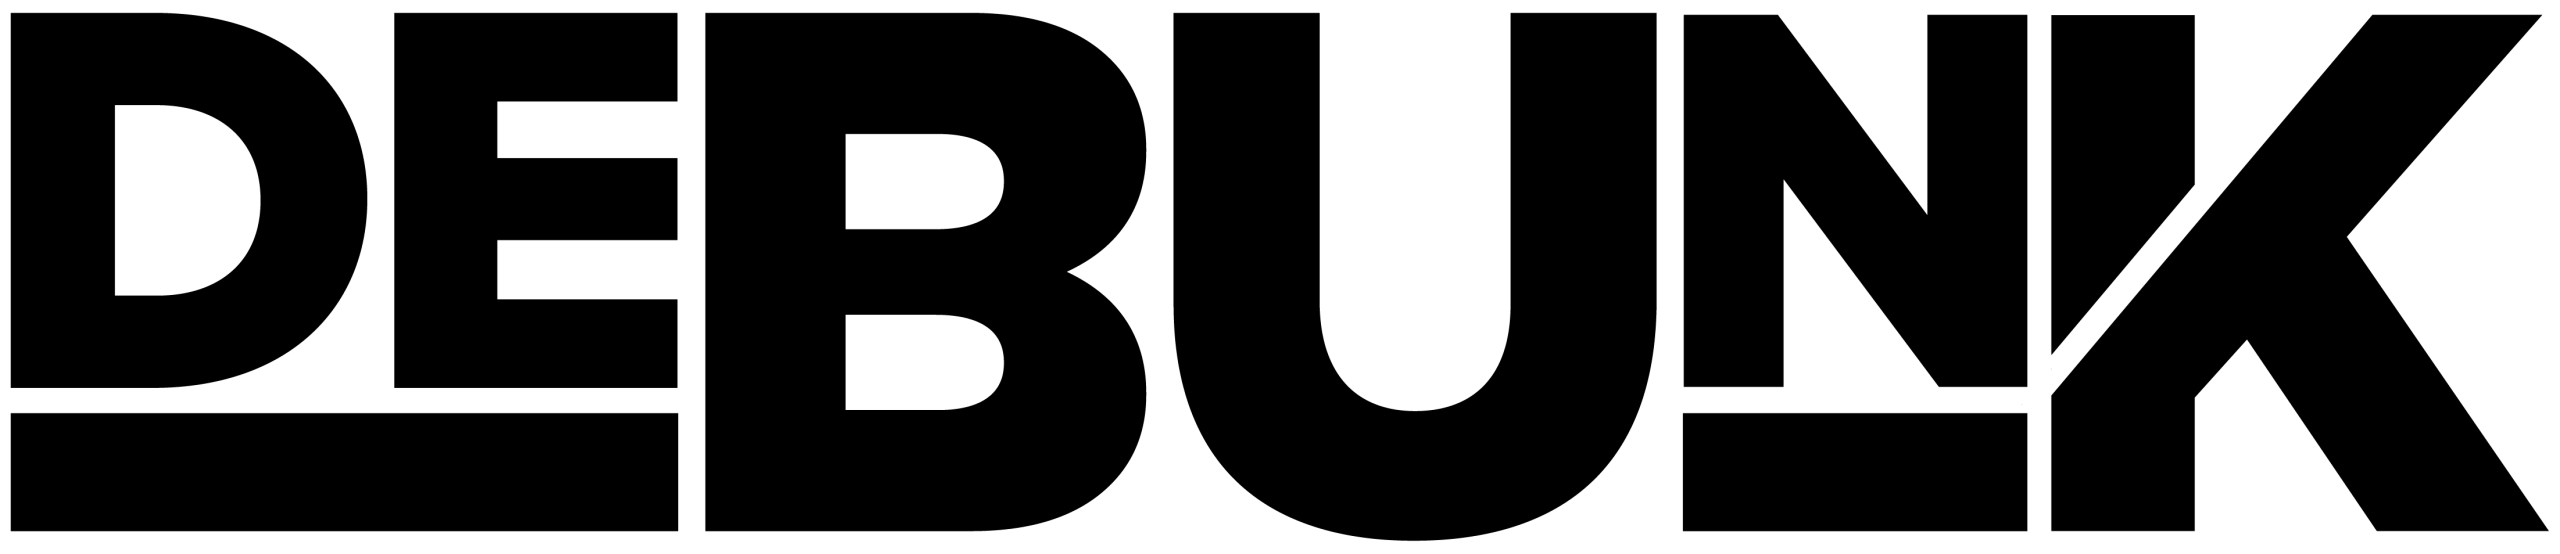 logo-black-1-scaled-1.webp